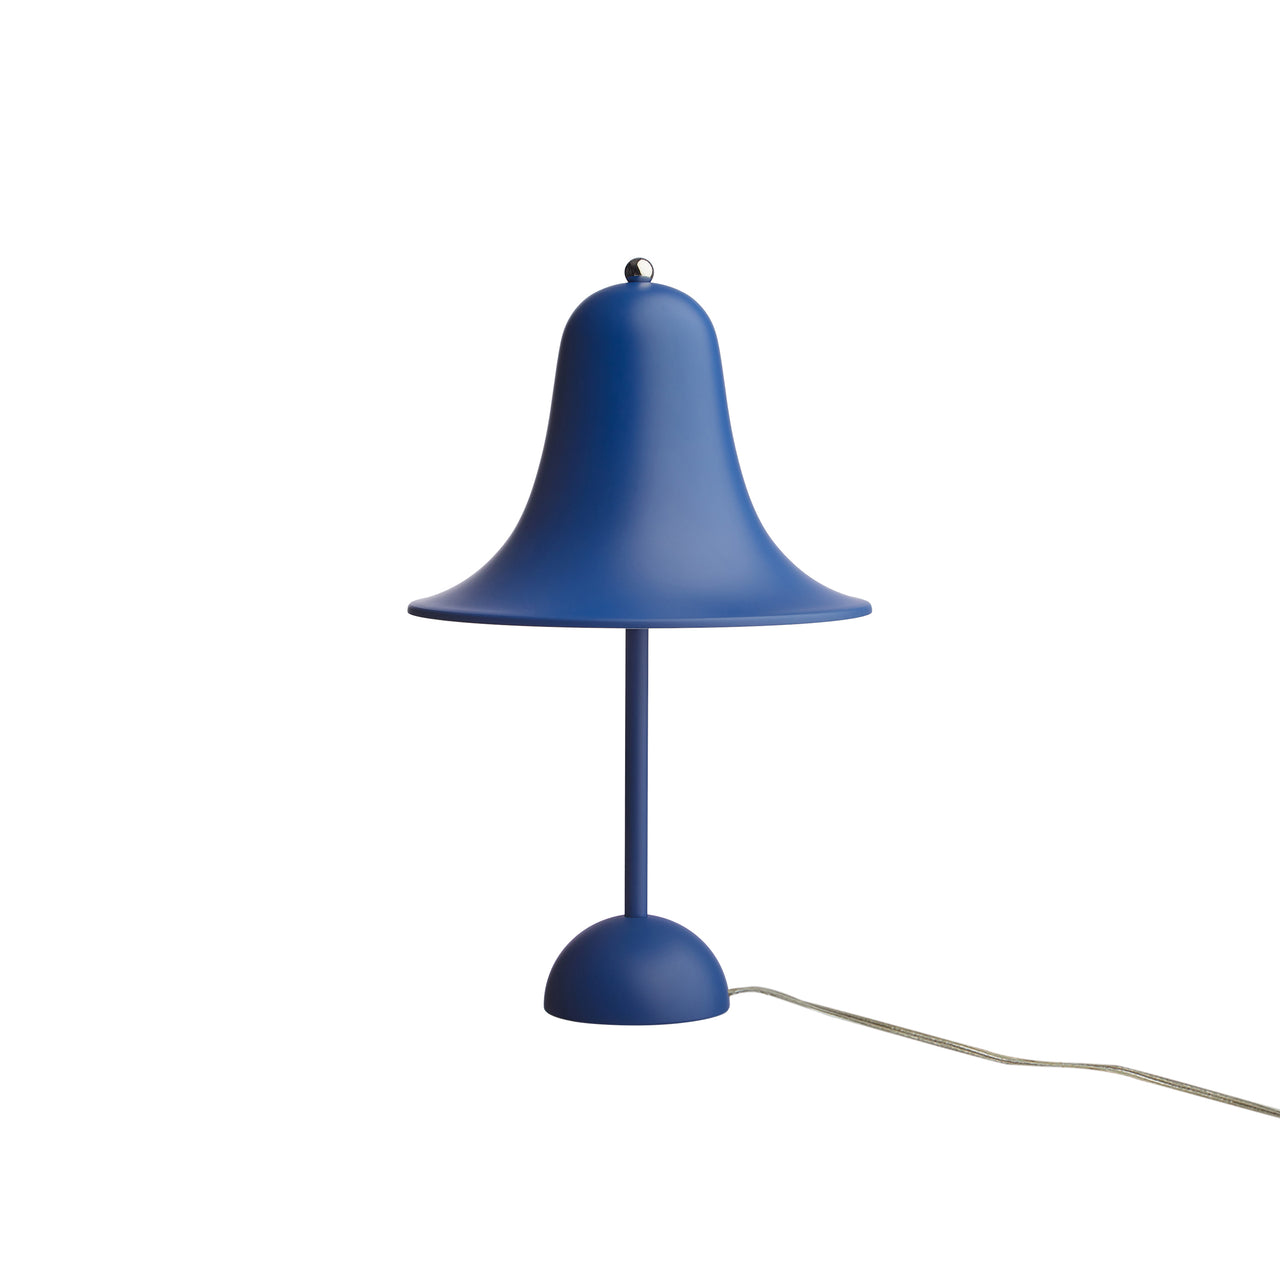 Pantop Table Lamp: Matt Classic Blue